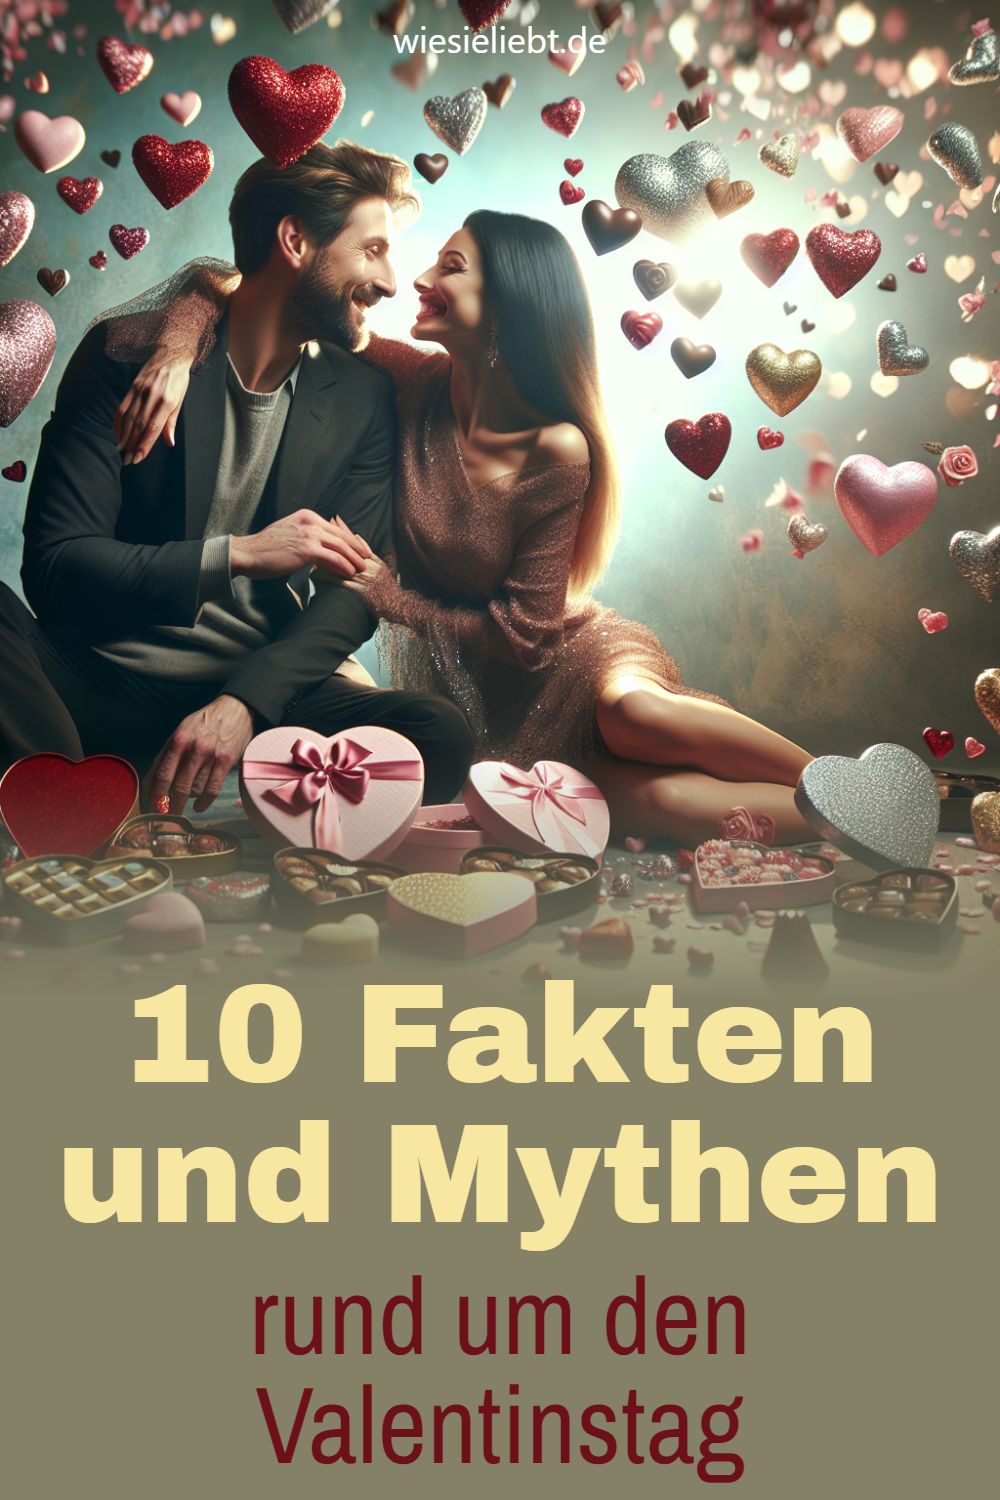 10 Fakten und Mythen rund um den Valentinstag